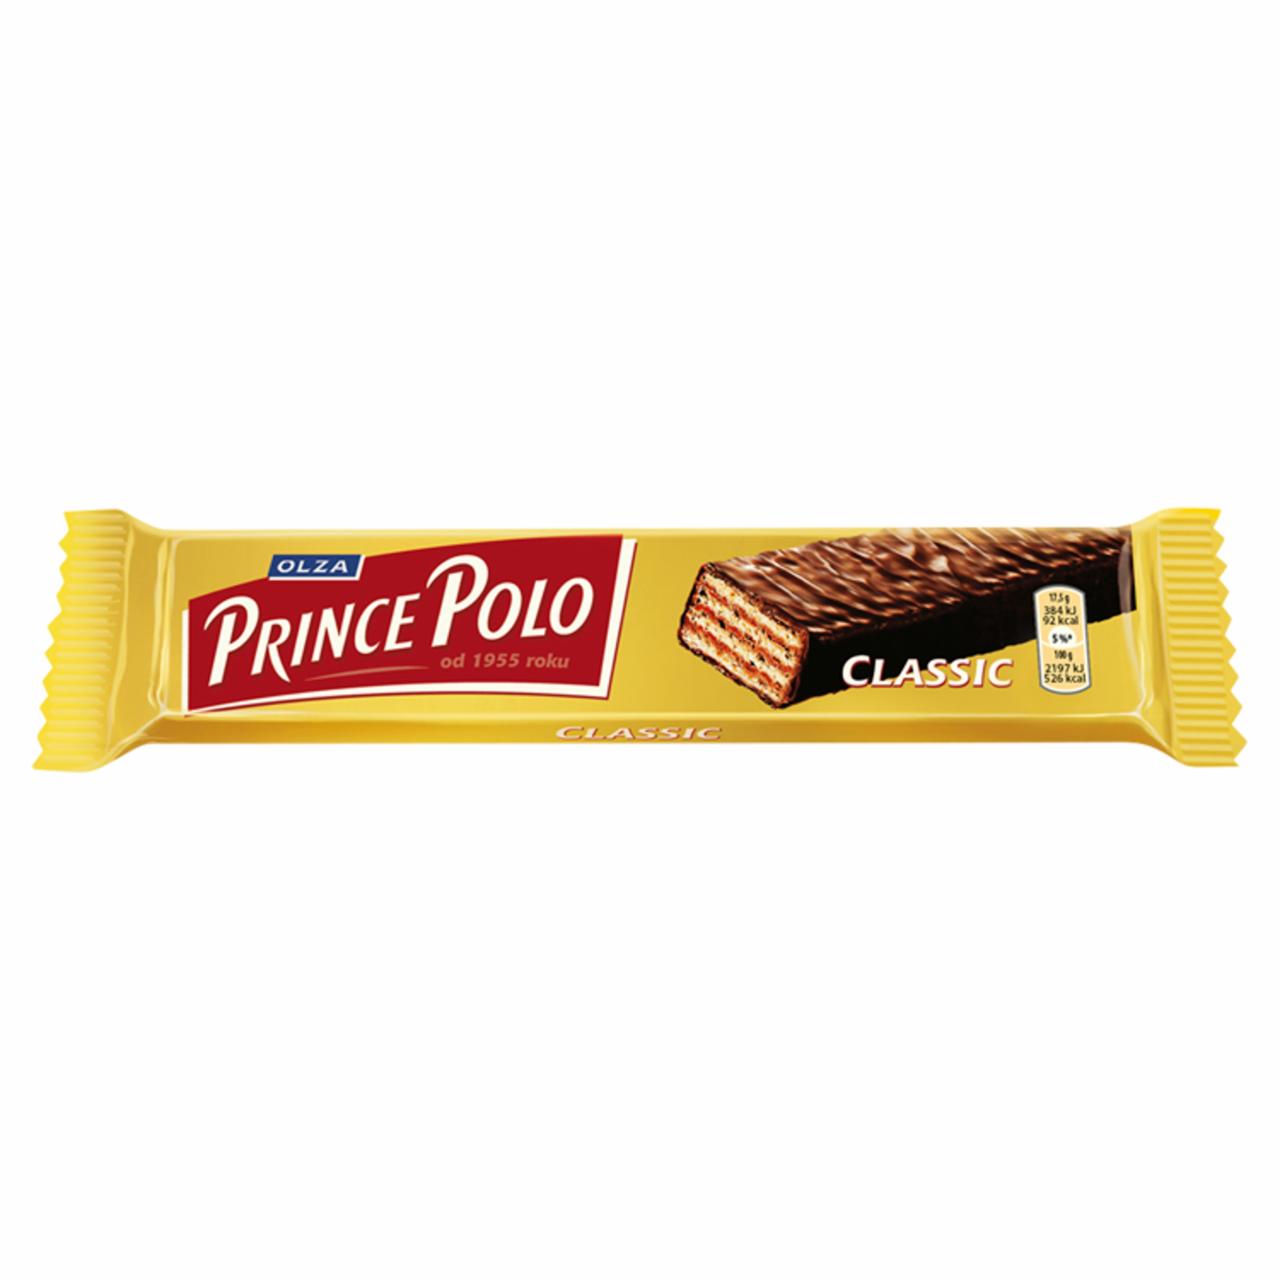 Zdjęcia - Prince Polo Classic Kruchy wafelek z kremem kakaowym oblany czekoladą 17,5 g Olza